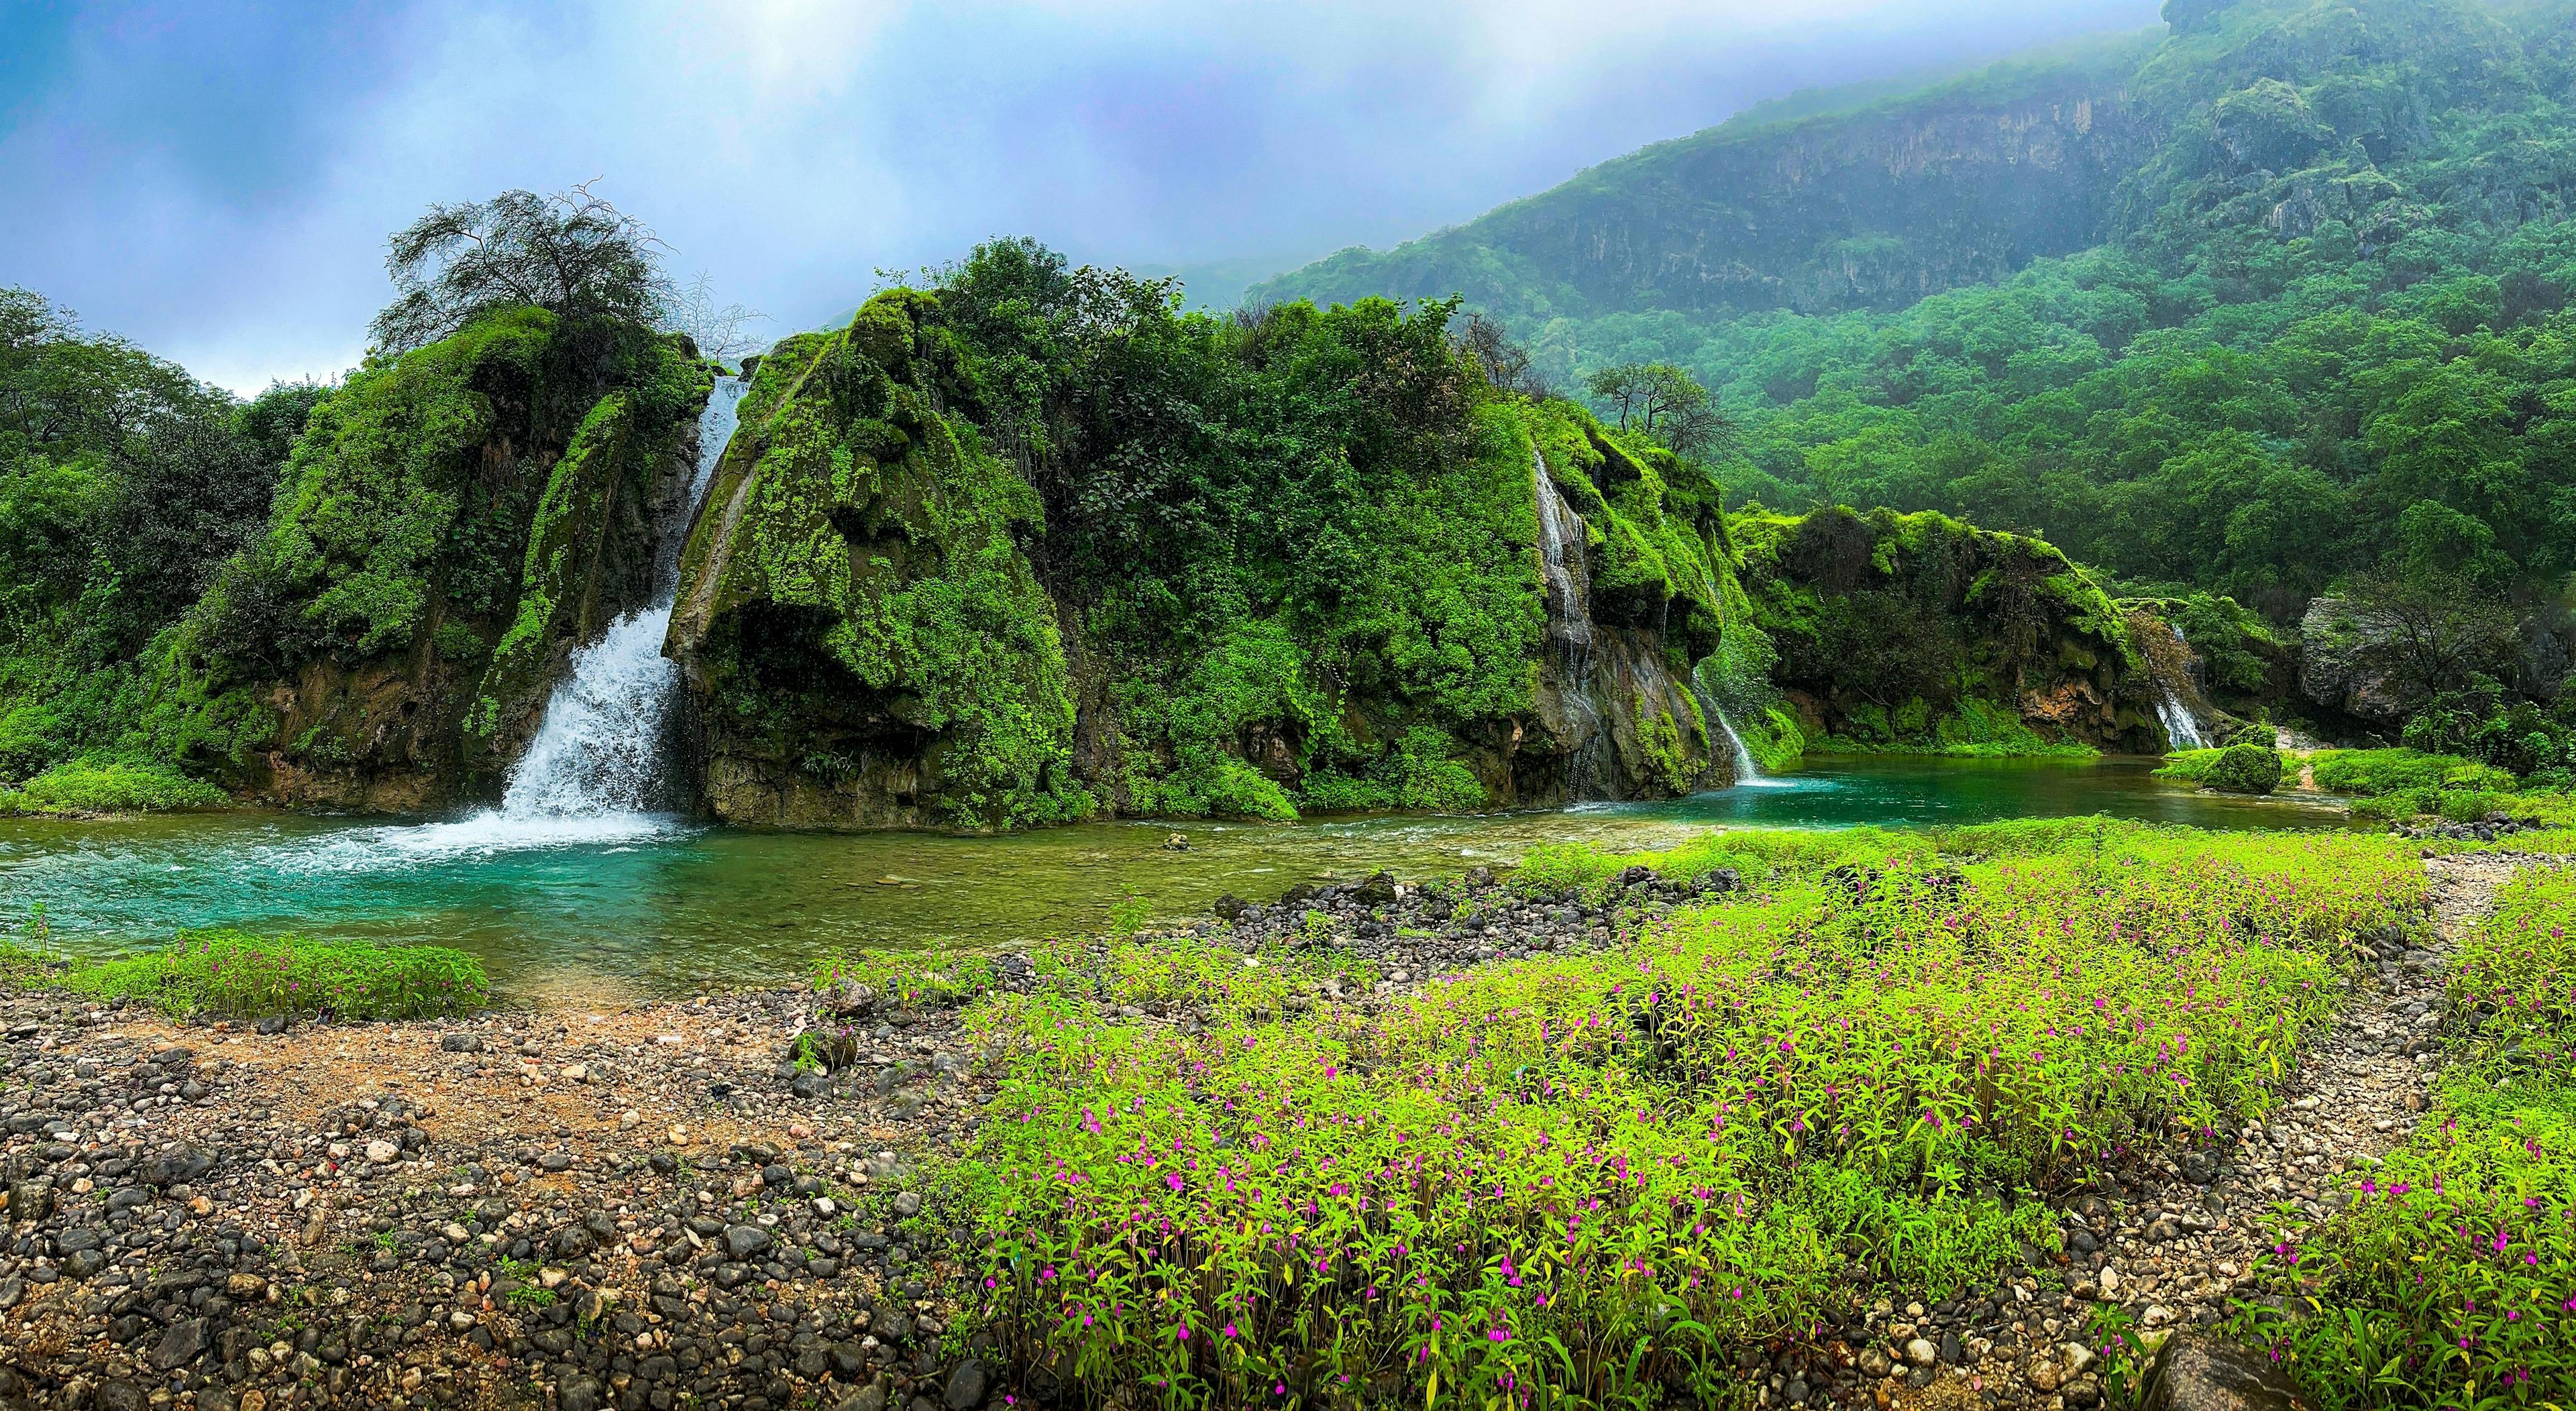 Waterfalls and lush greenery in Salalah Oman.